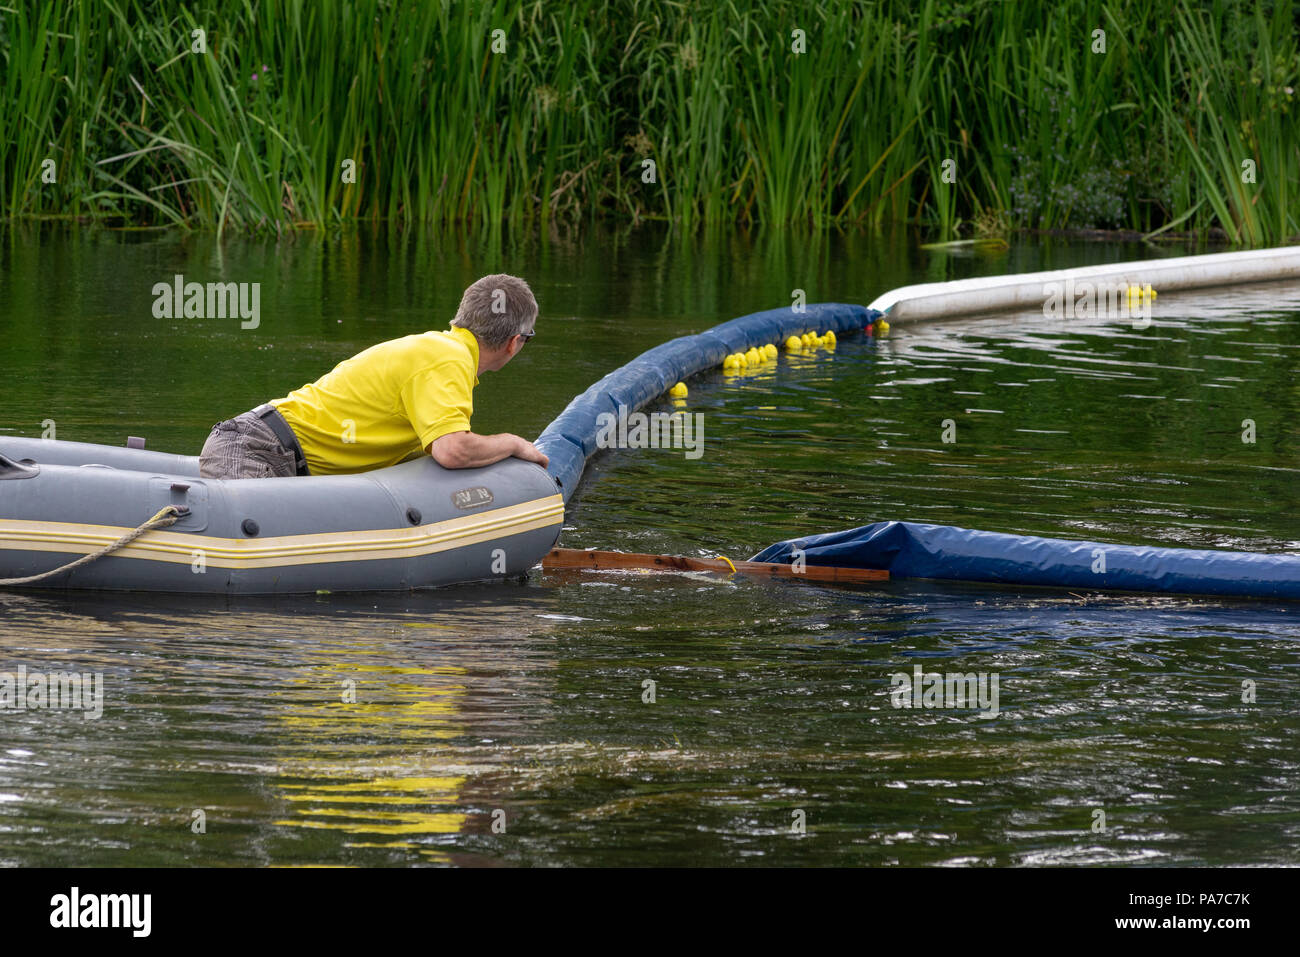 L'homme dans une chemise jaune dans un canot bateau sur une rivière gares de la ligne d'arrivée d'une course de canards en caoutchouc, partie d'un village anglais juste. Banque D'Images